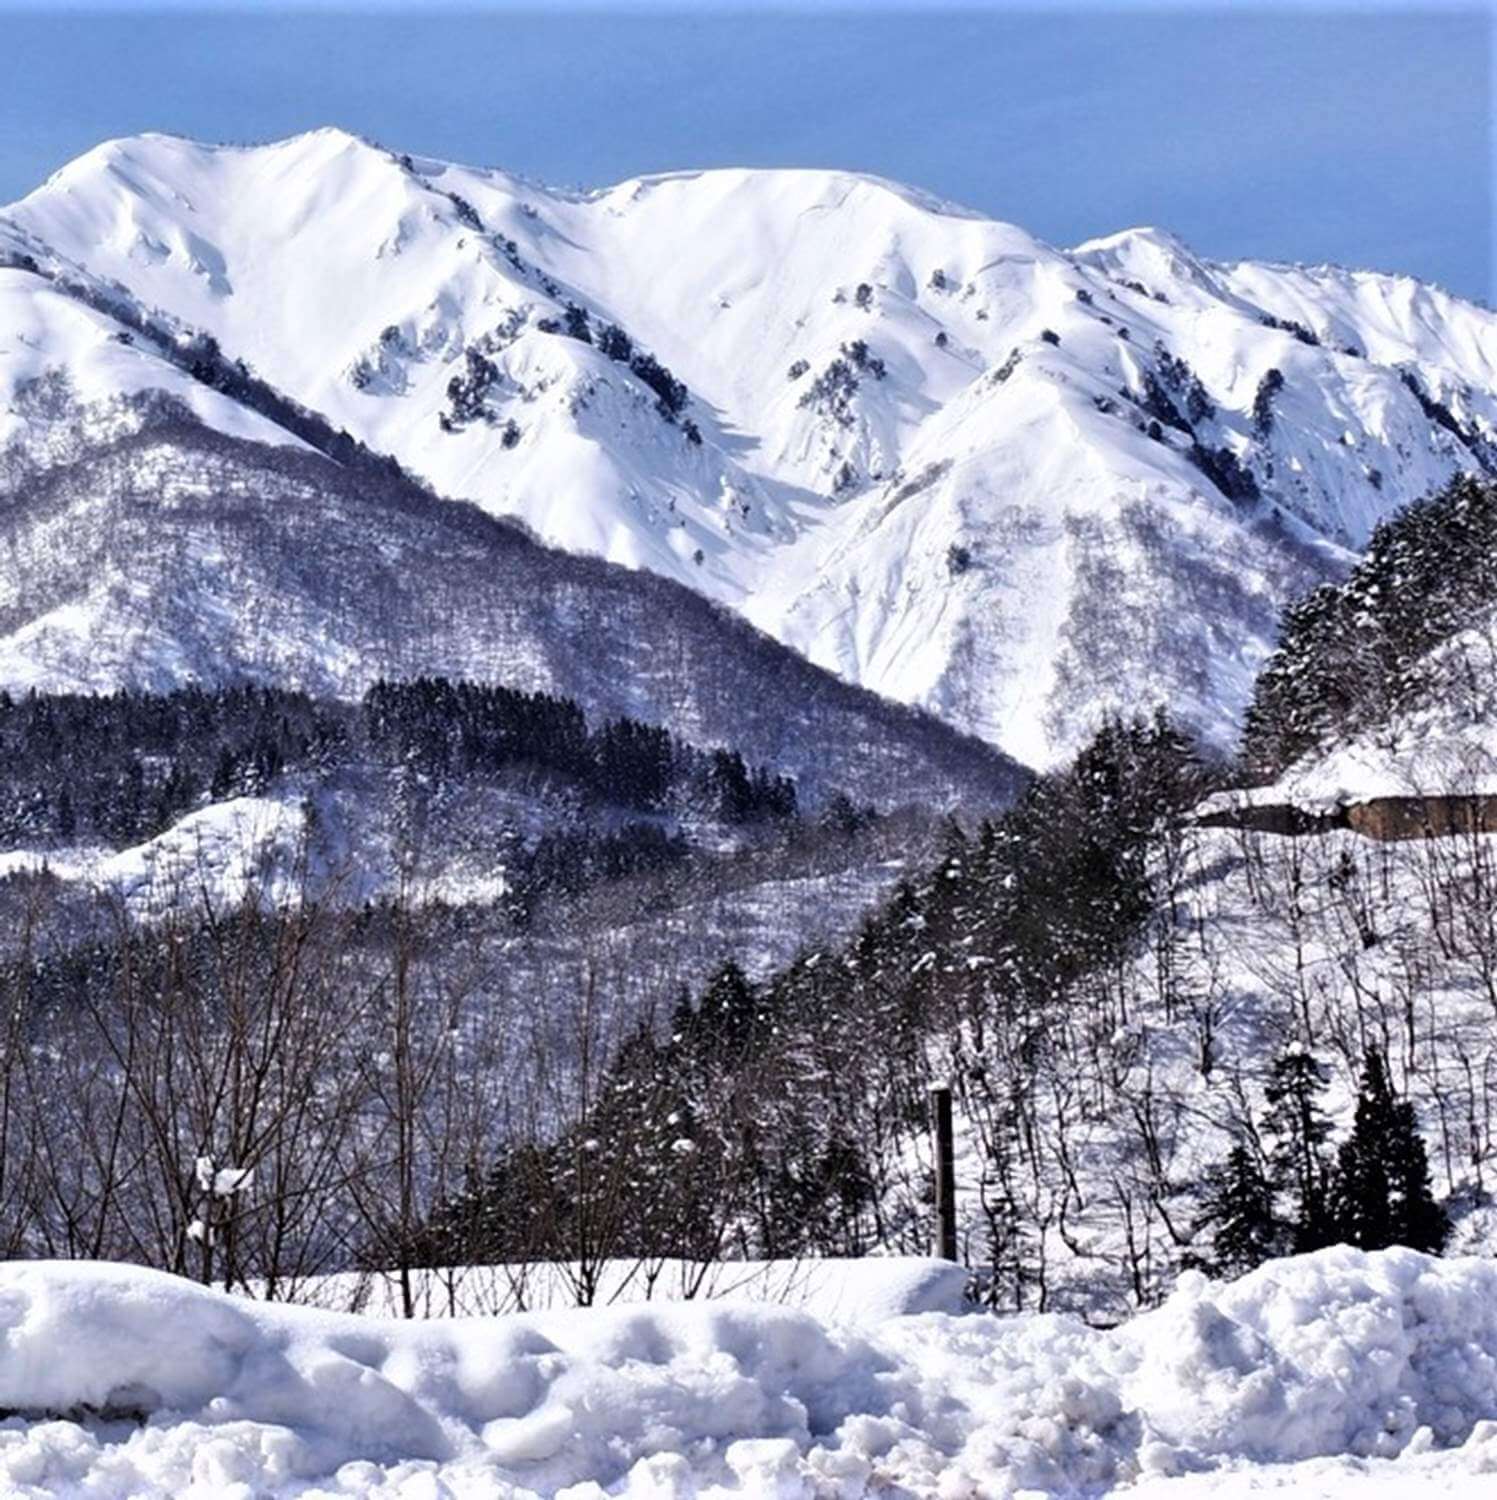 Shirakawago Villadge in winter, Gifu Prefecture = Pixta 6